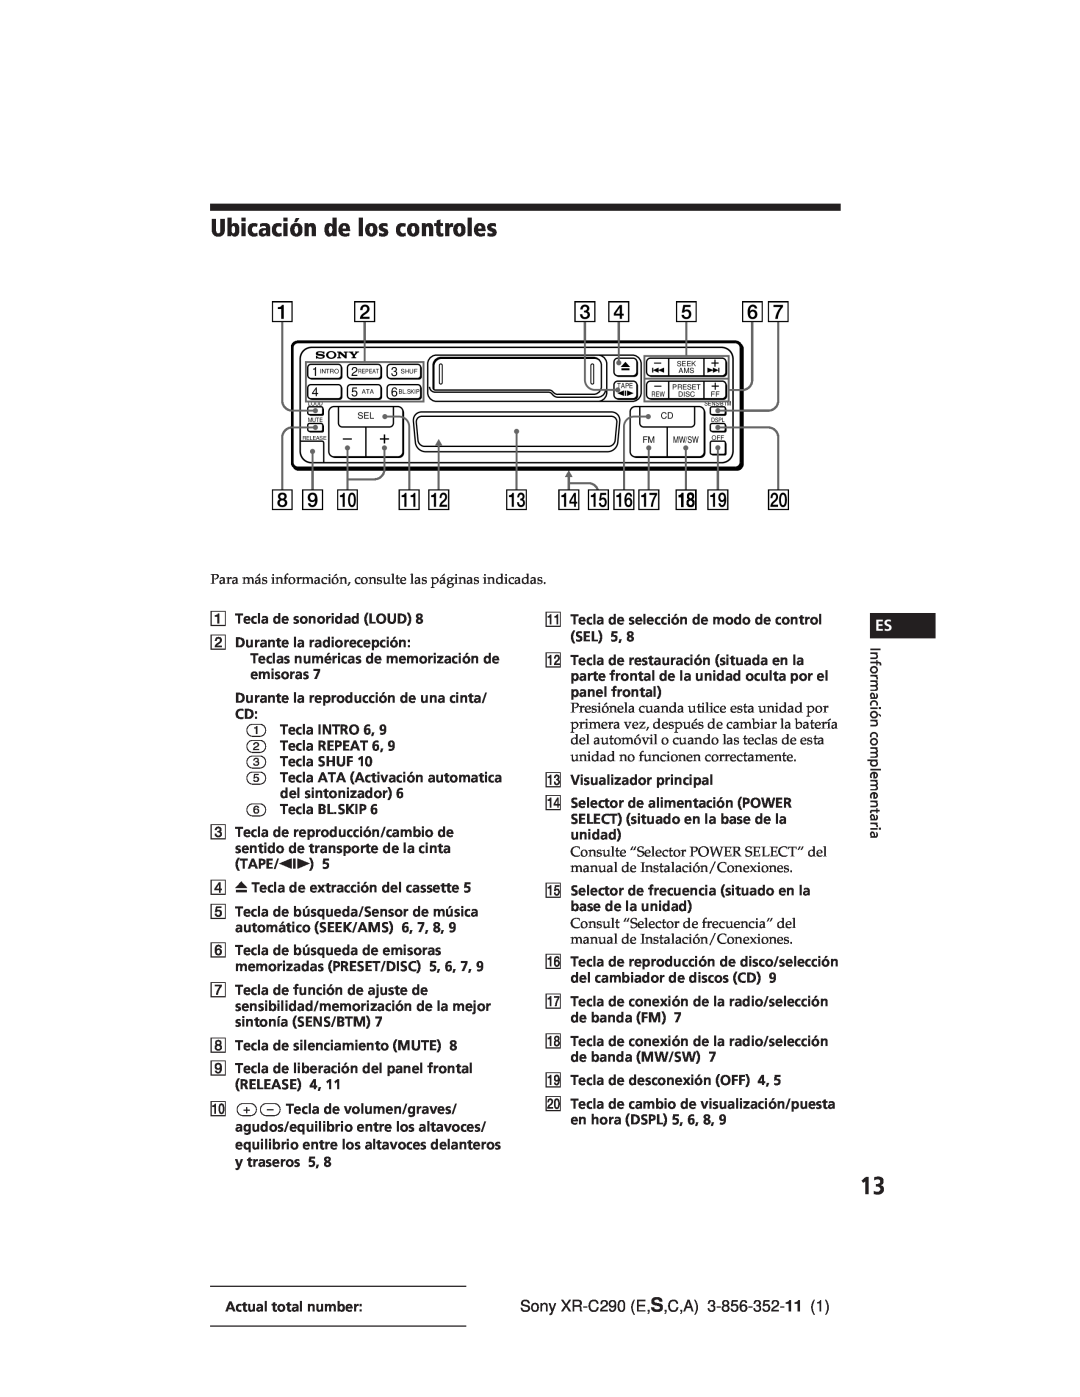 Sony manual Ubicación de los controles, Sony XR-C290E,S,C,A 